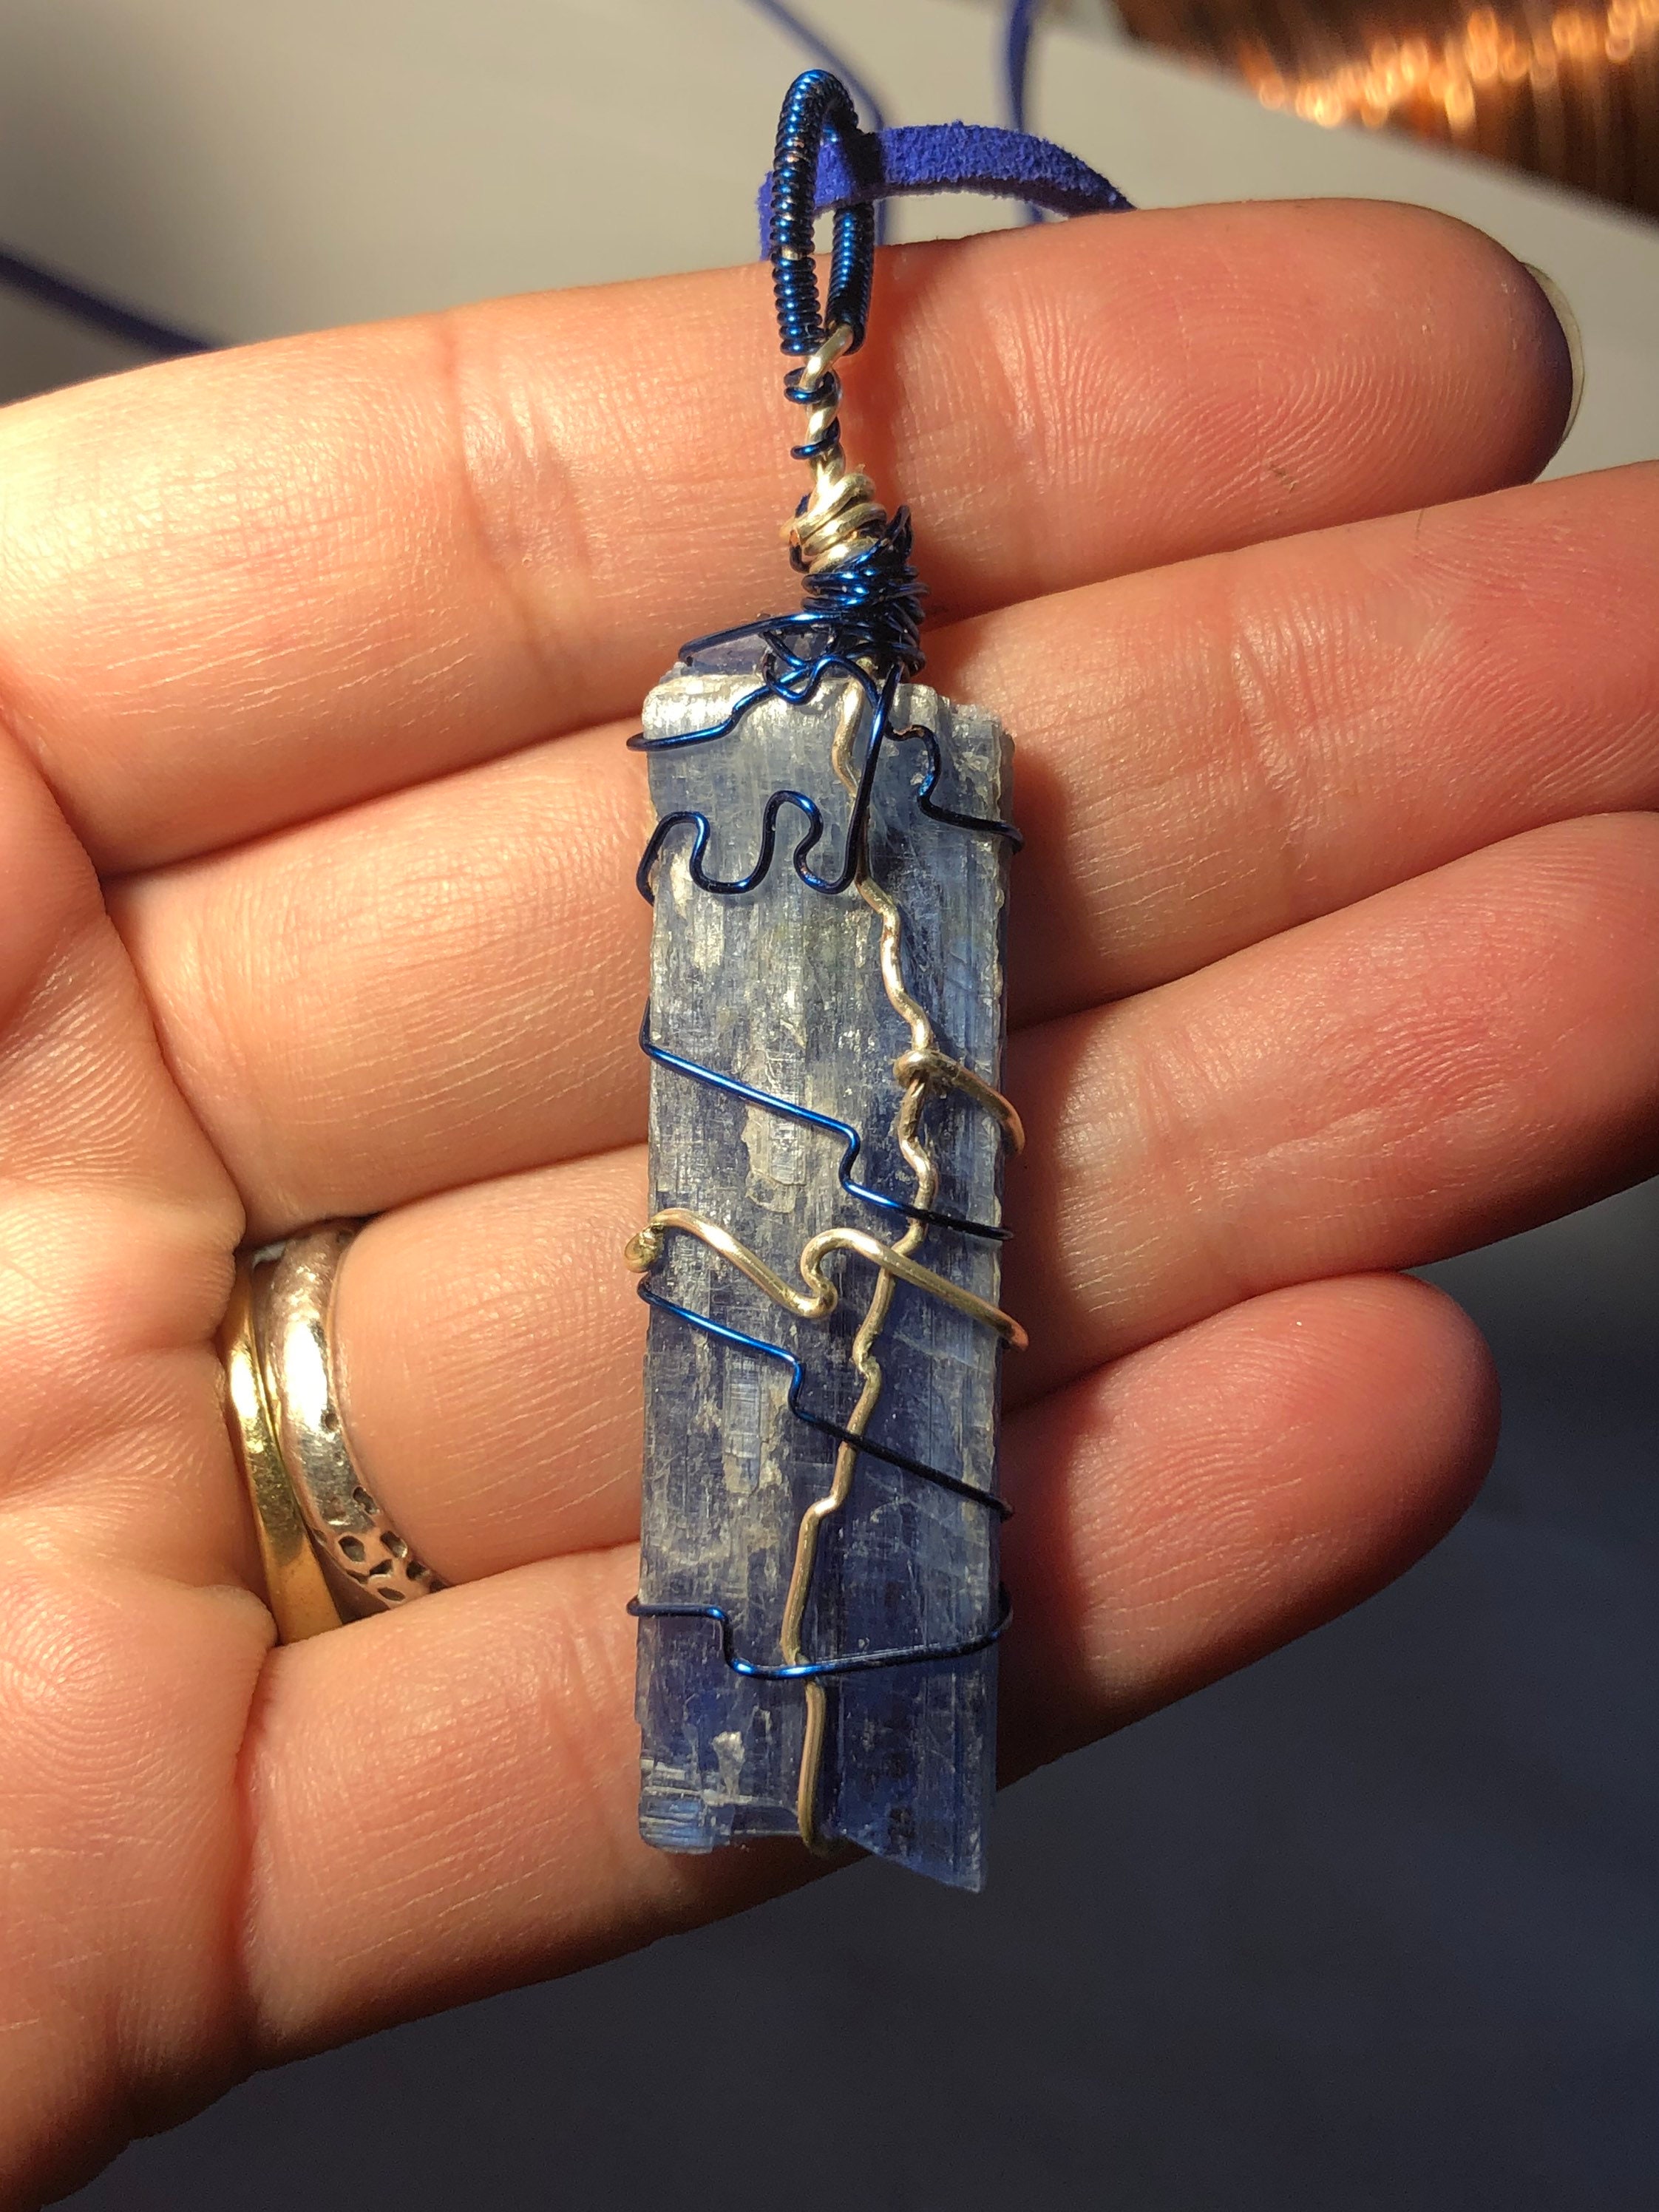 Blue kyanite pendant necklace : r/somethingimade